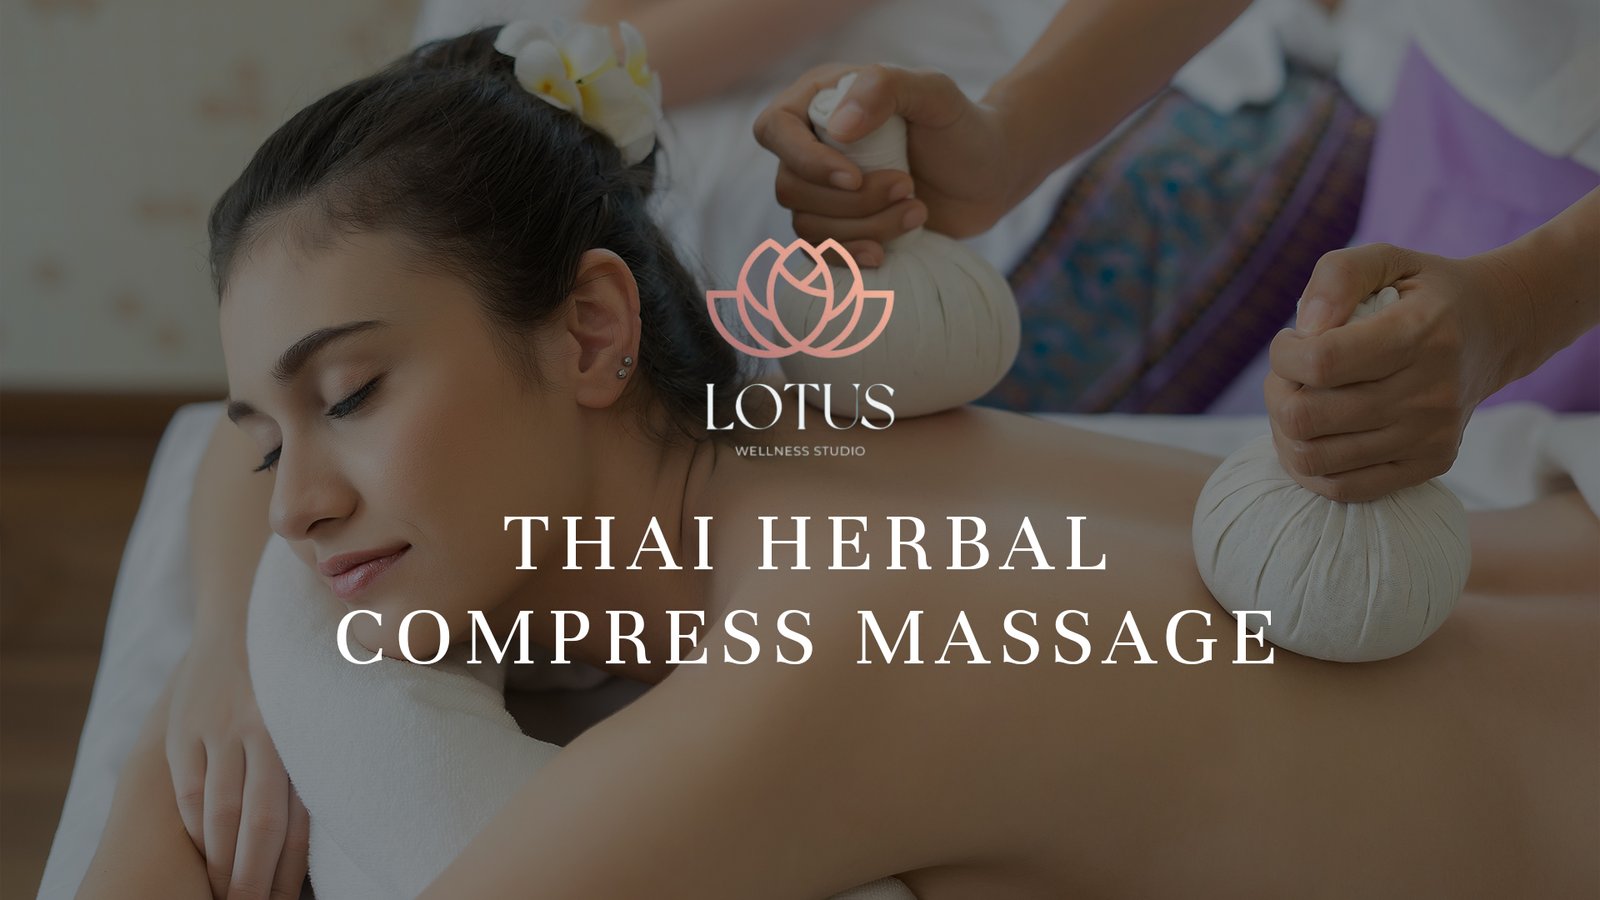 10. Thai Herbal Compress Massage